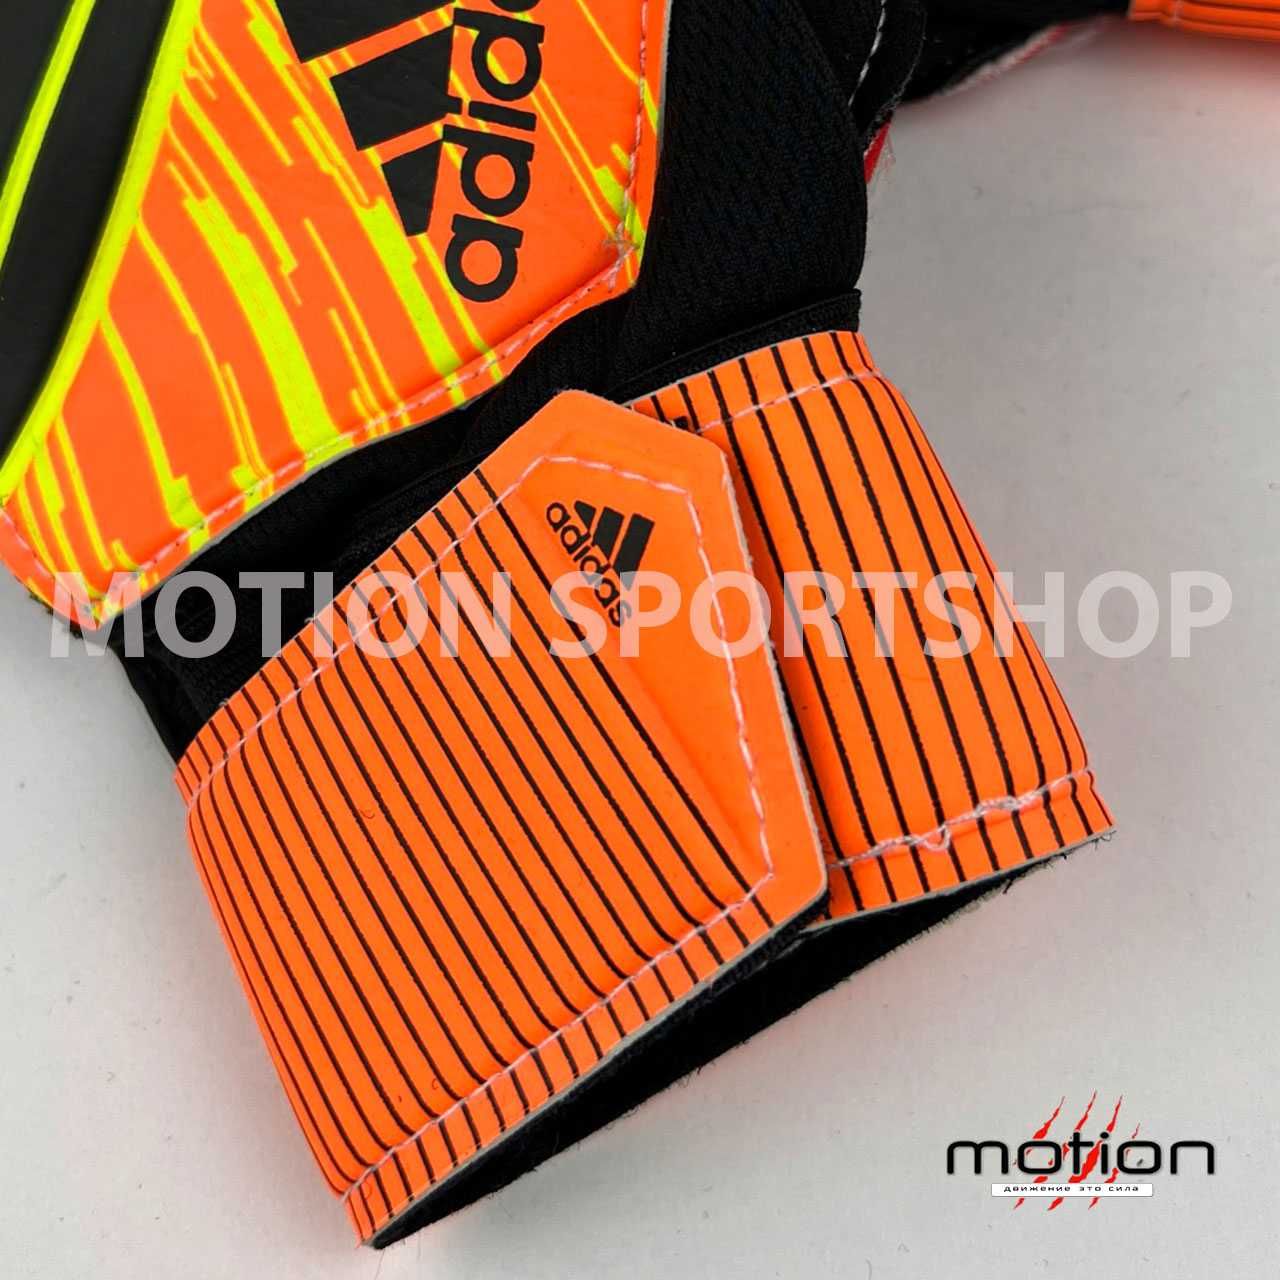 Вратарские перчатки Adidas, синий/оранжевый (размеры: 5, 6 ,7)